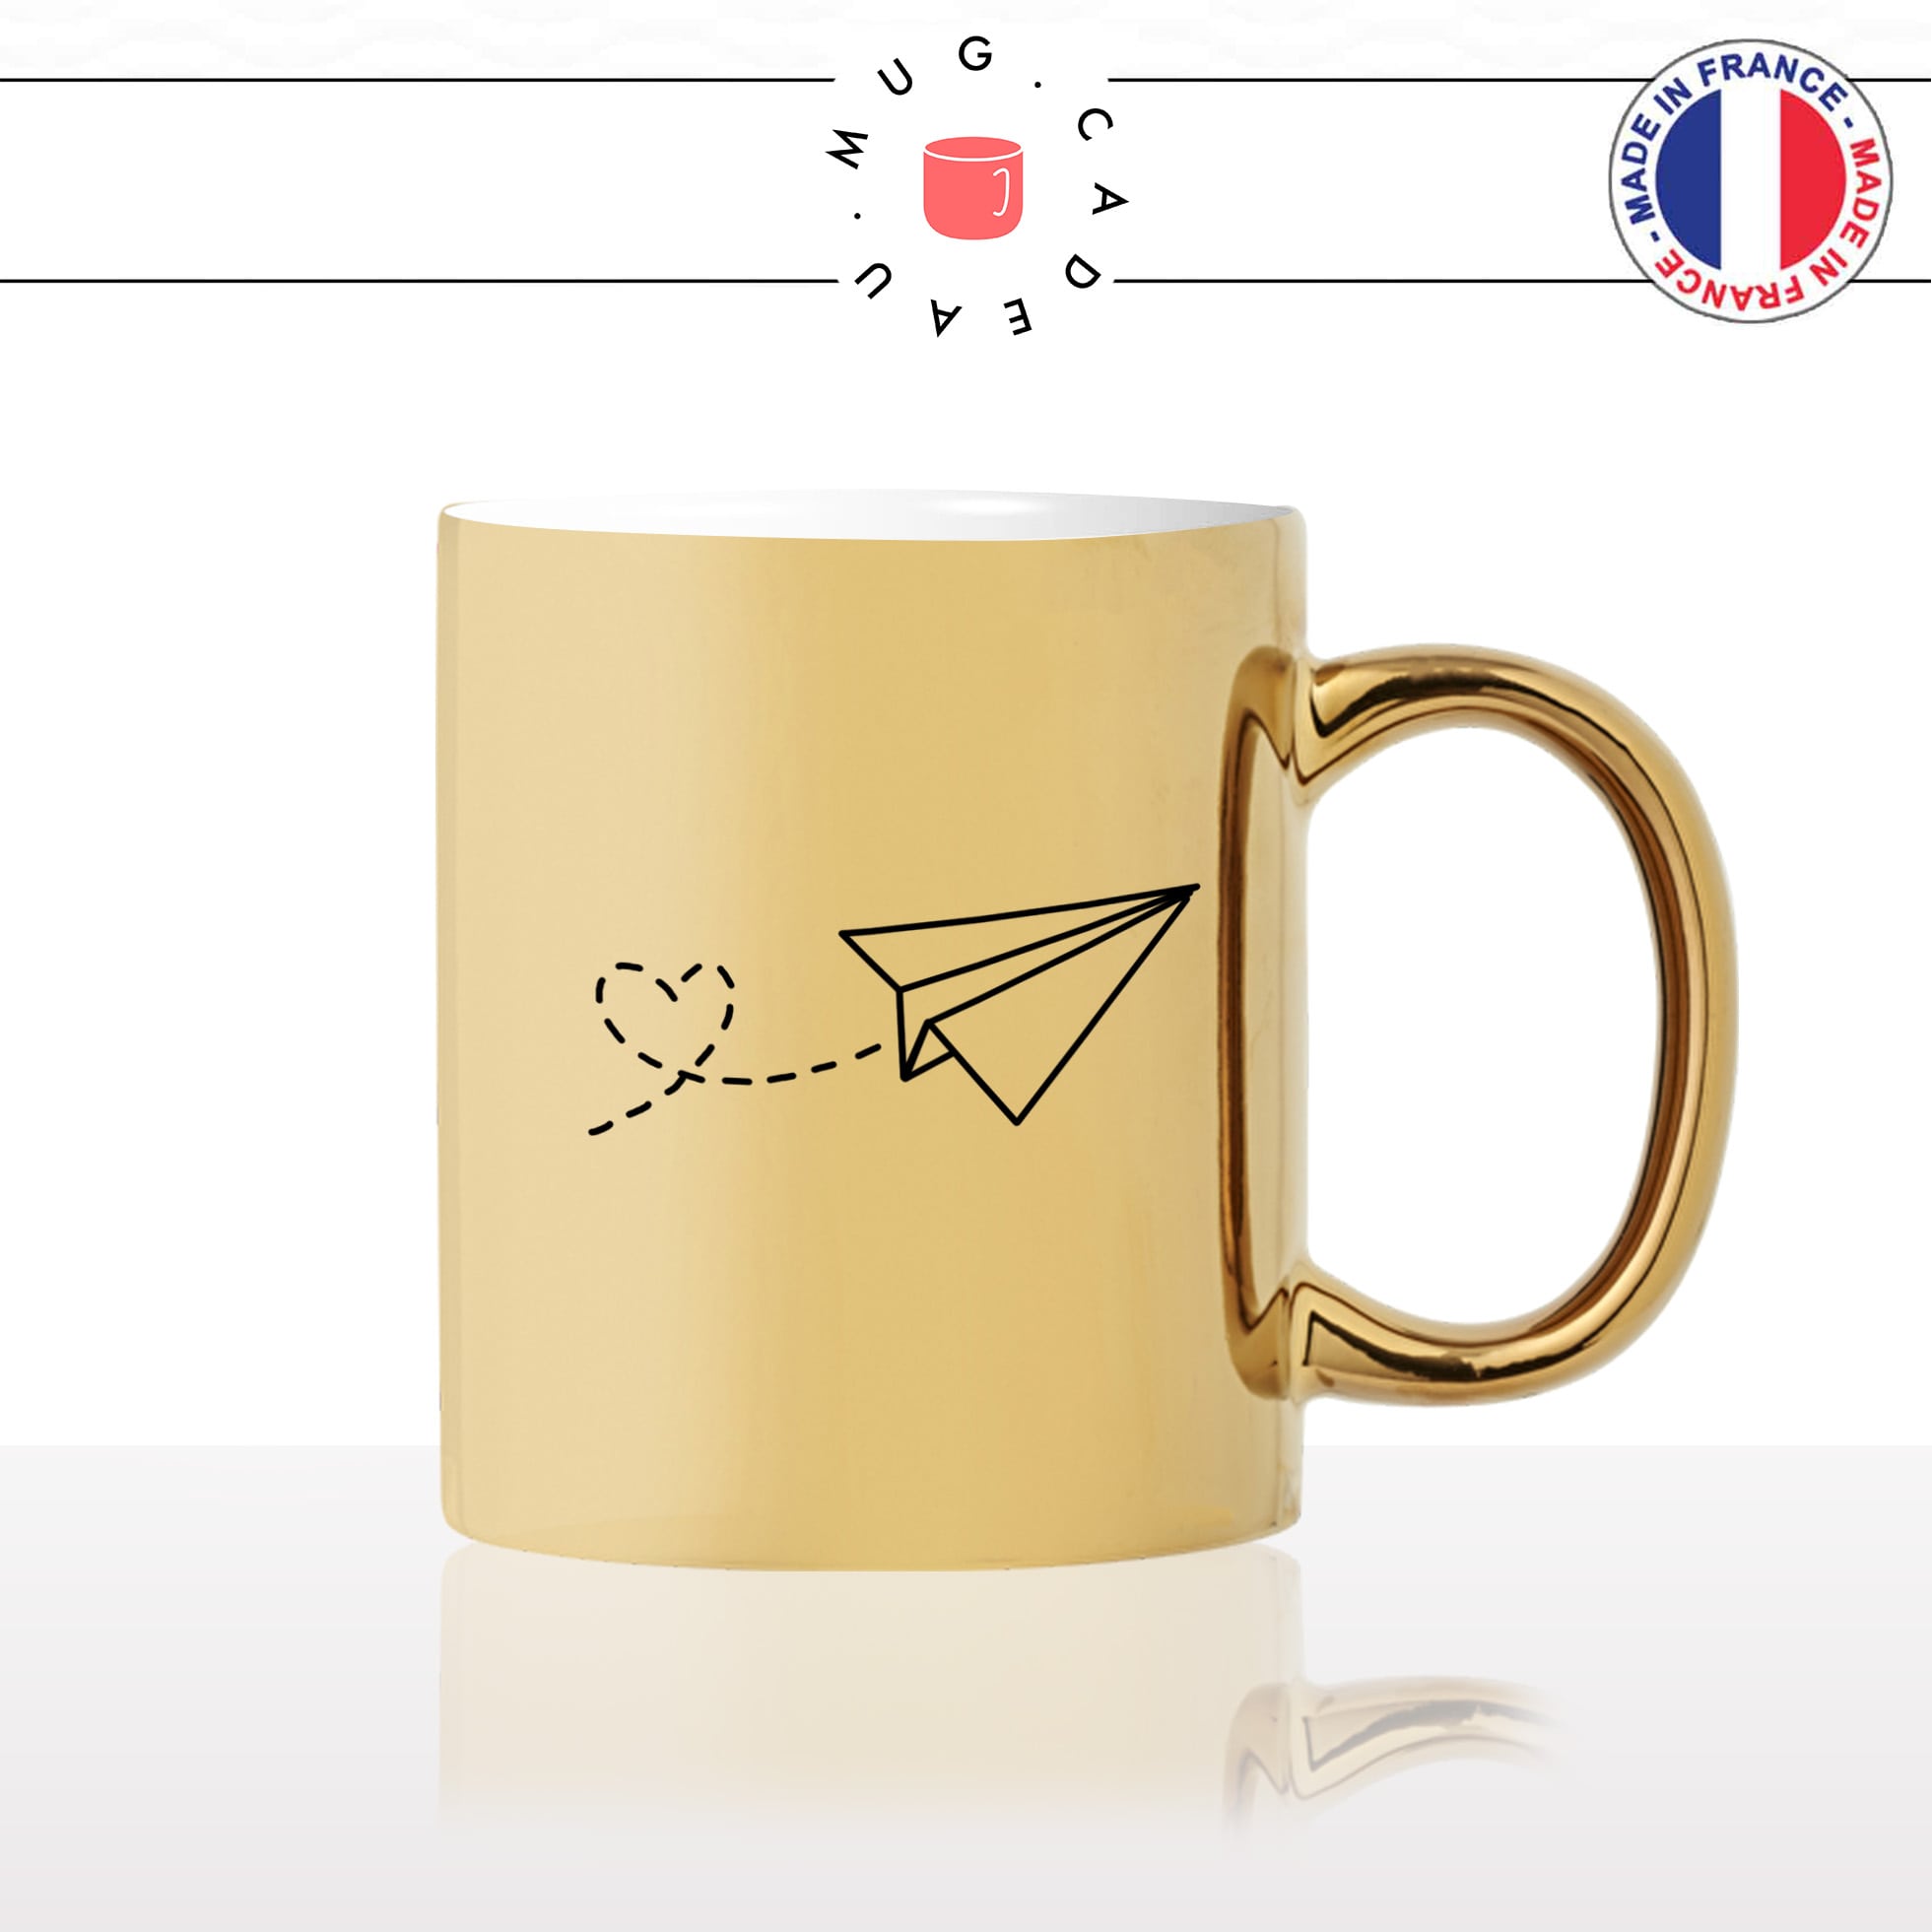 mug-tasse-or-doré-avion-papier-coeur-voyage-amoureux-couple-st-valentin-amour-fun-café-thé-idée-cadeau-original-personnalisable-gold2-min